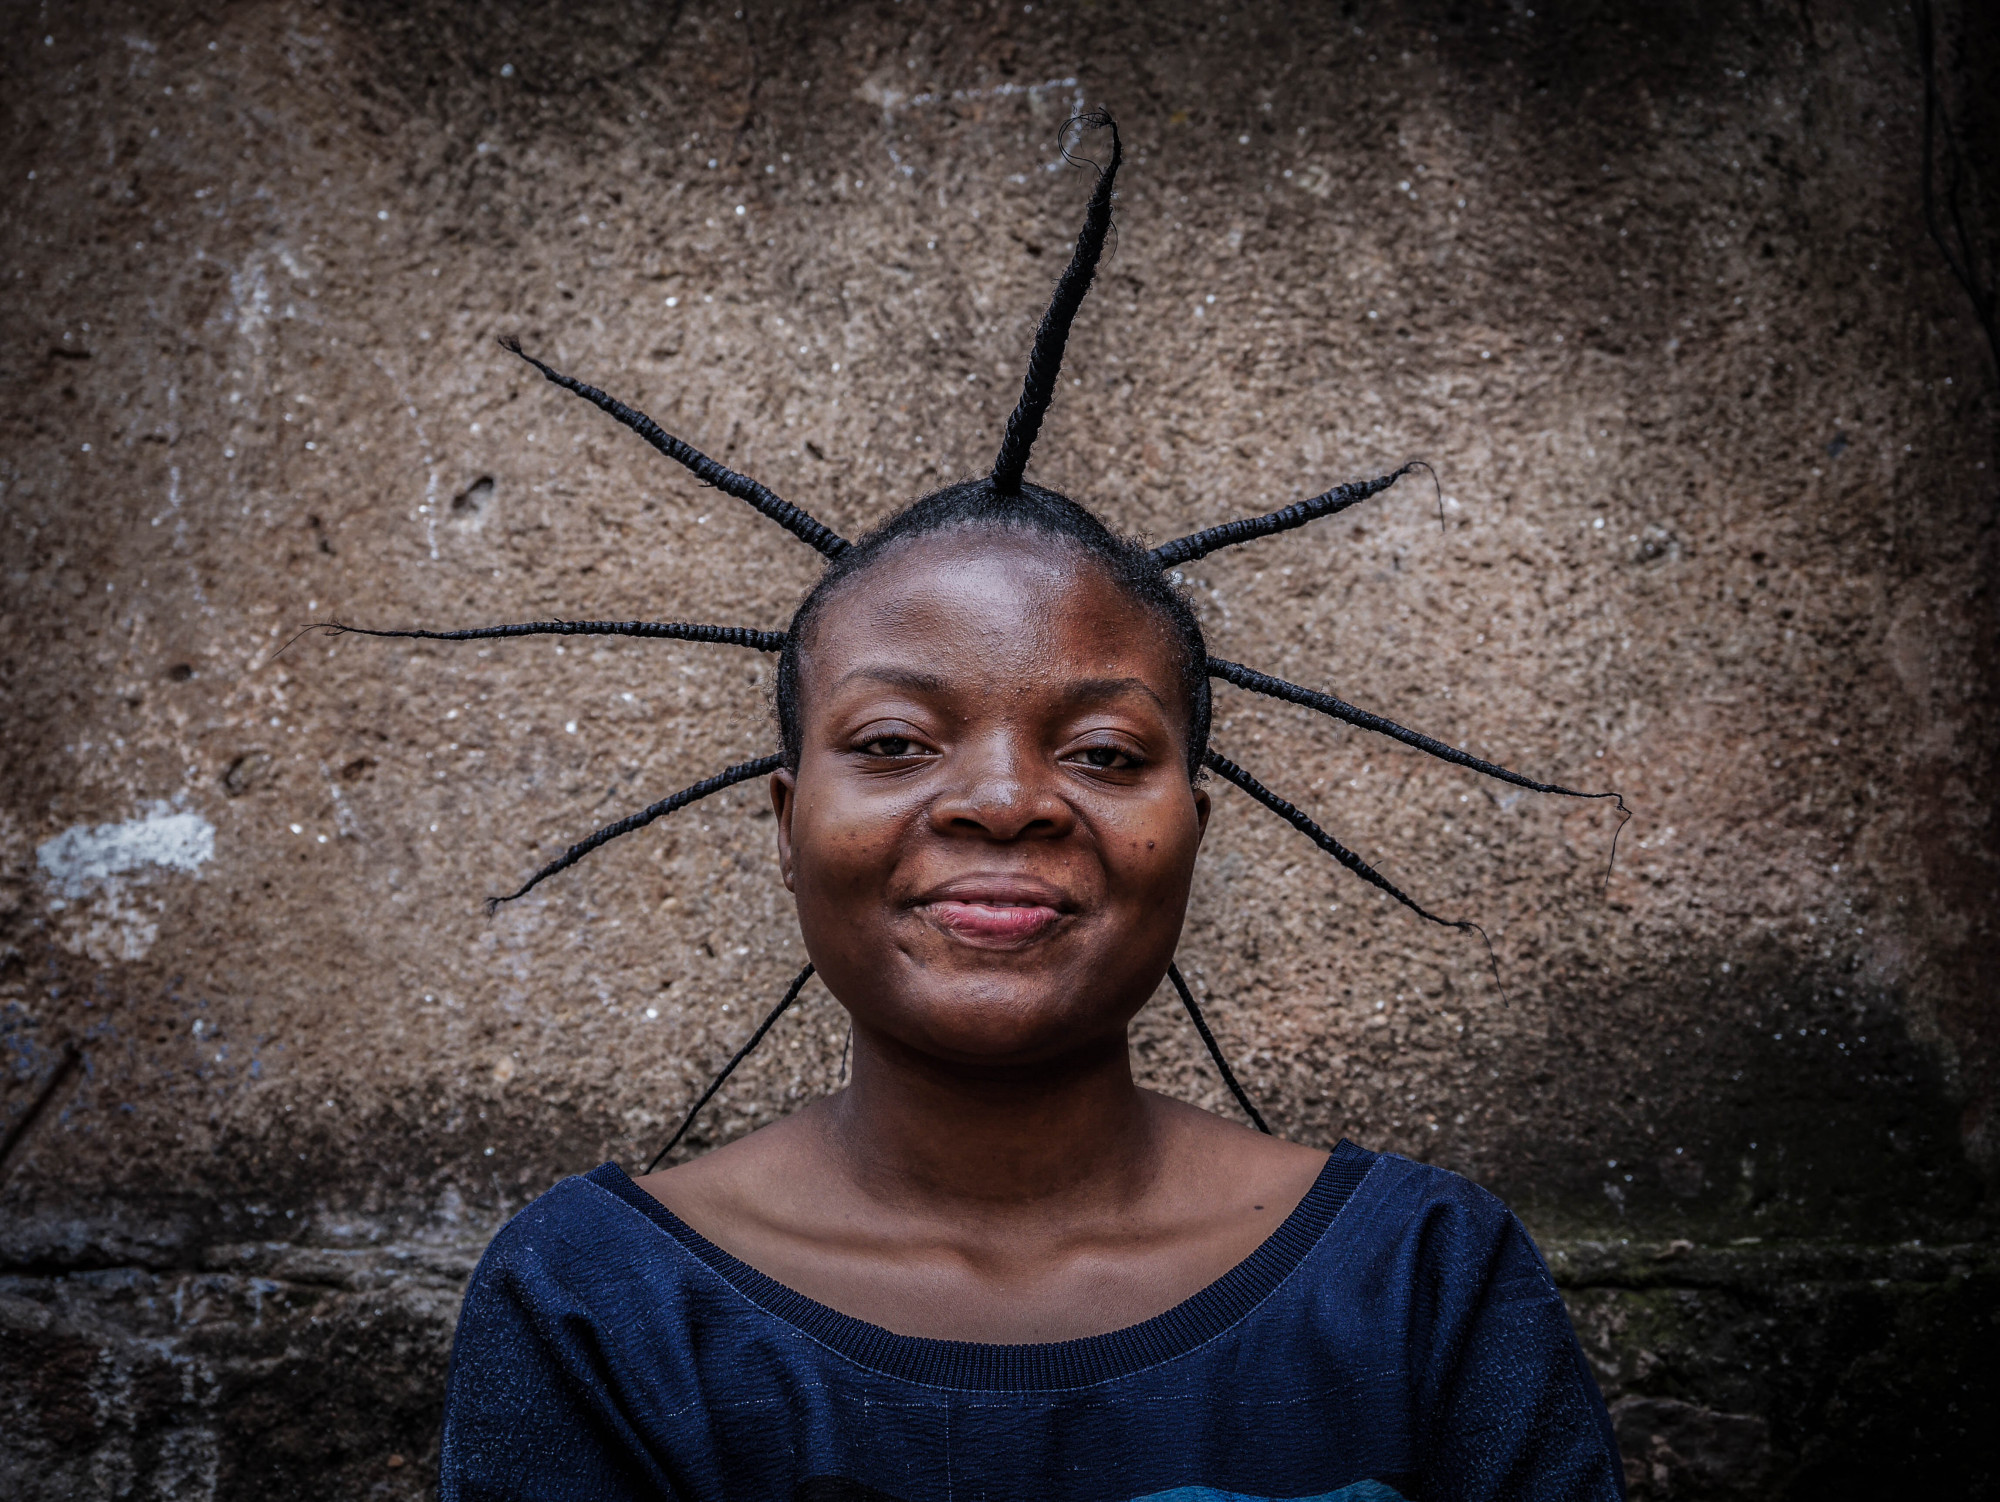 Bukavu, est de la RDC, juillet 2020. Des femmes arborent des coiffures traditionnelles, et se coiffent les unes les autres pendant le confinement. © Raissa Rwizibuka Karama pour la Fondation Carmignac